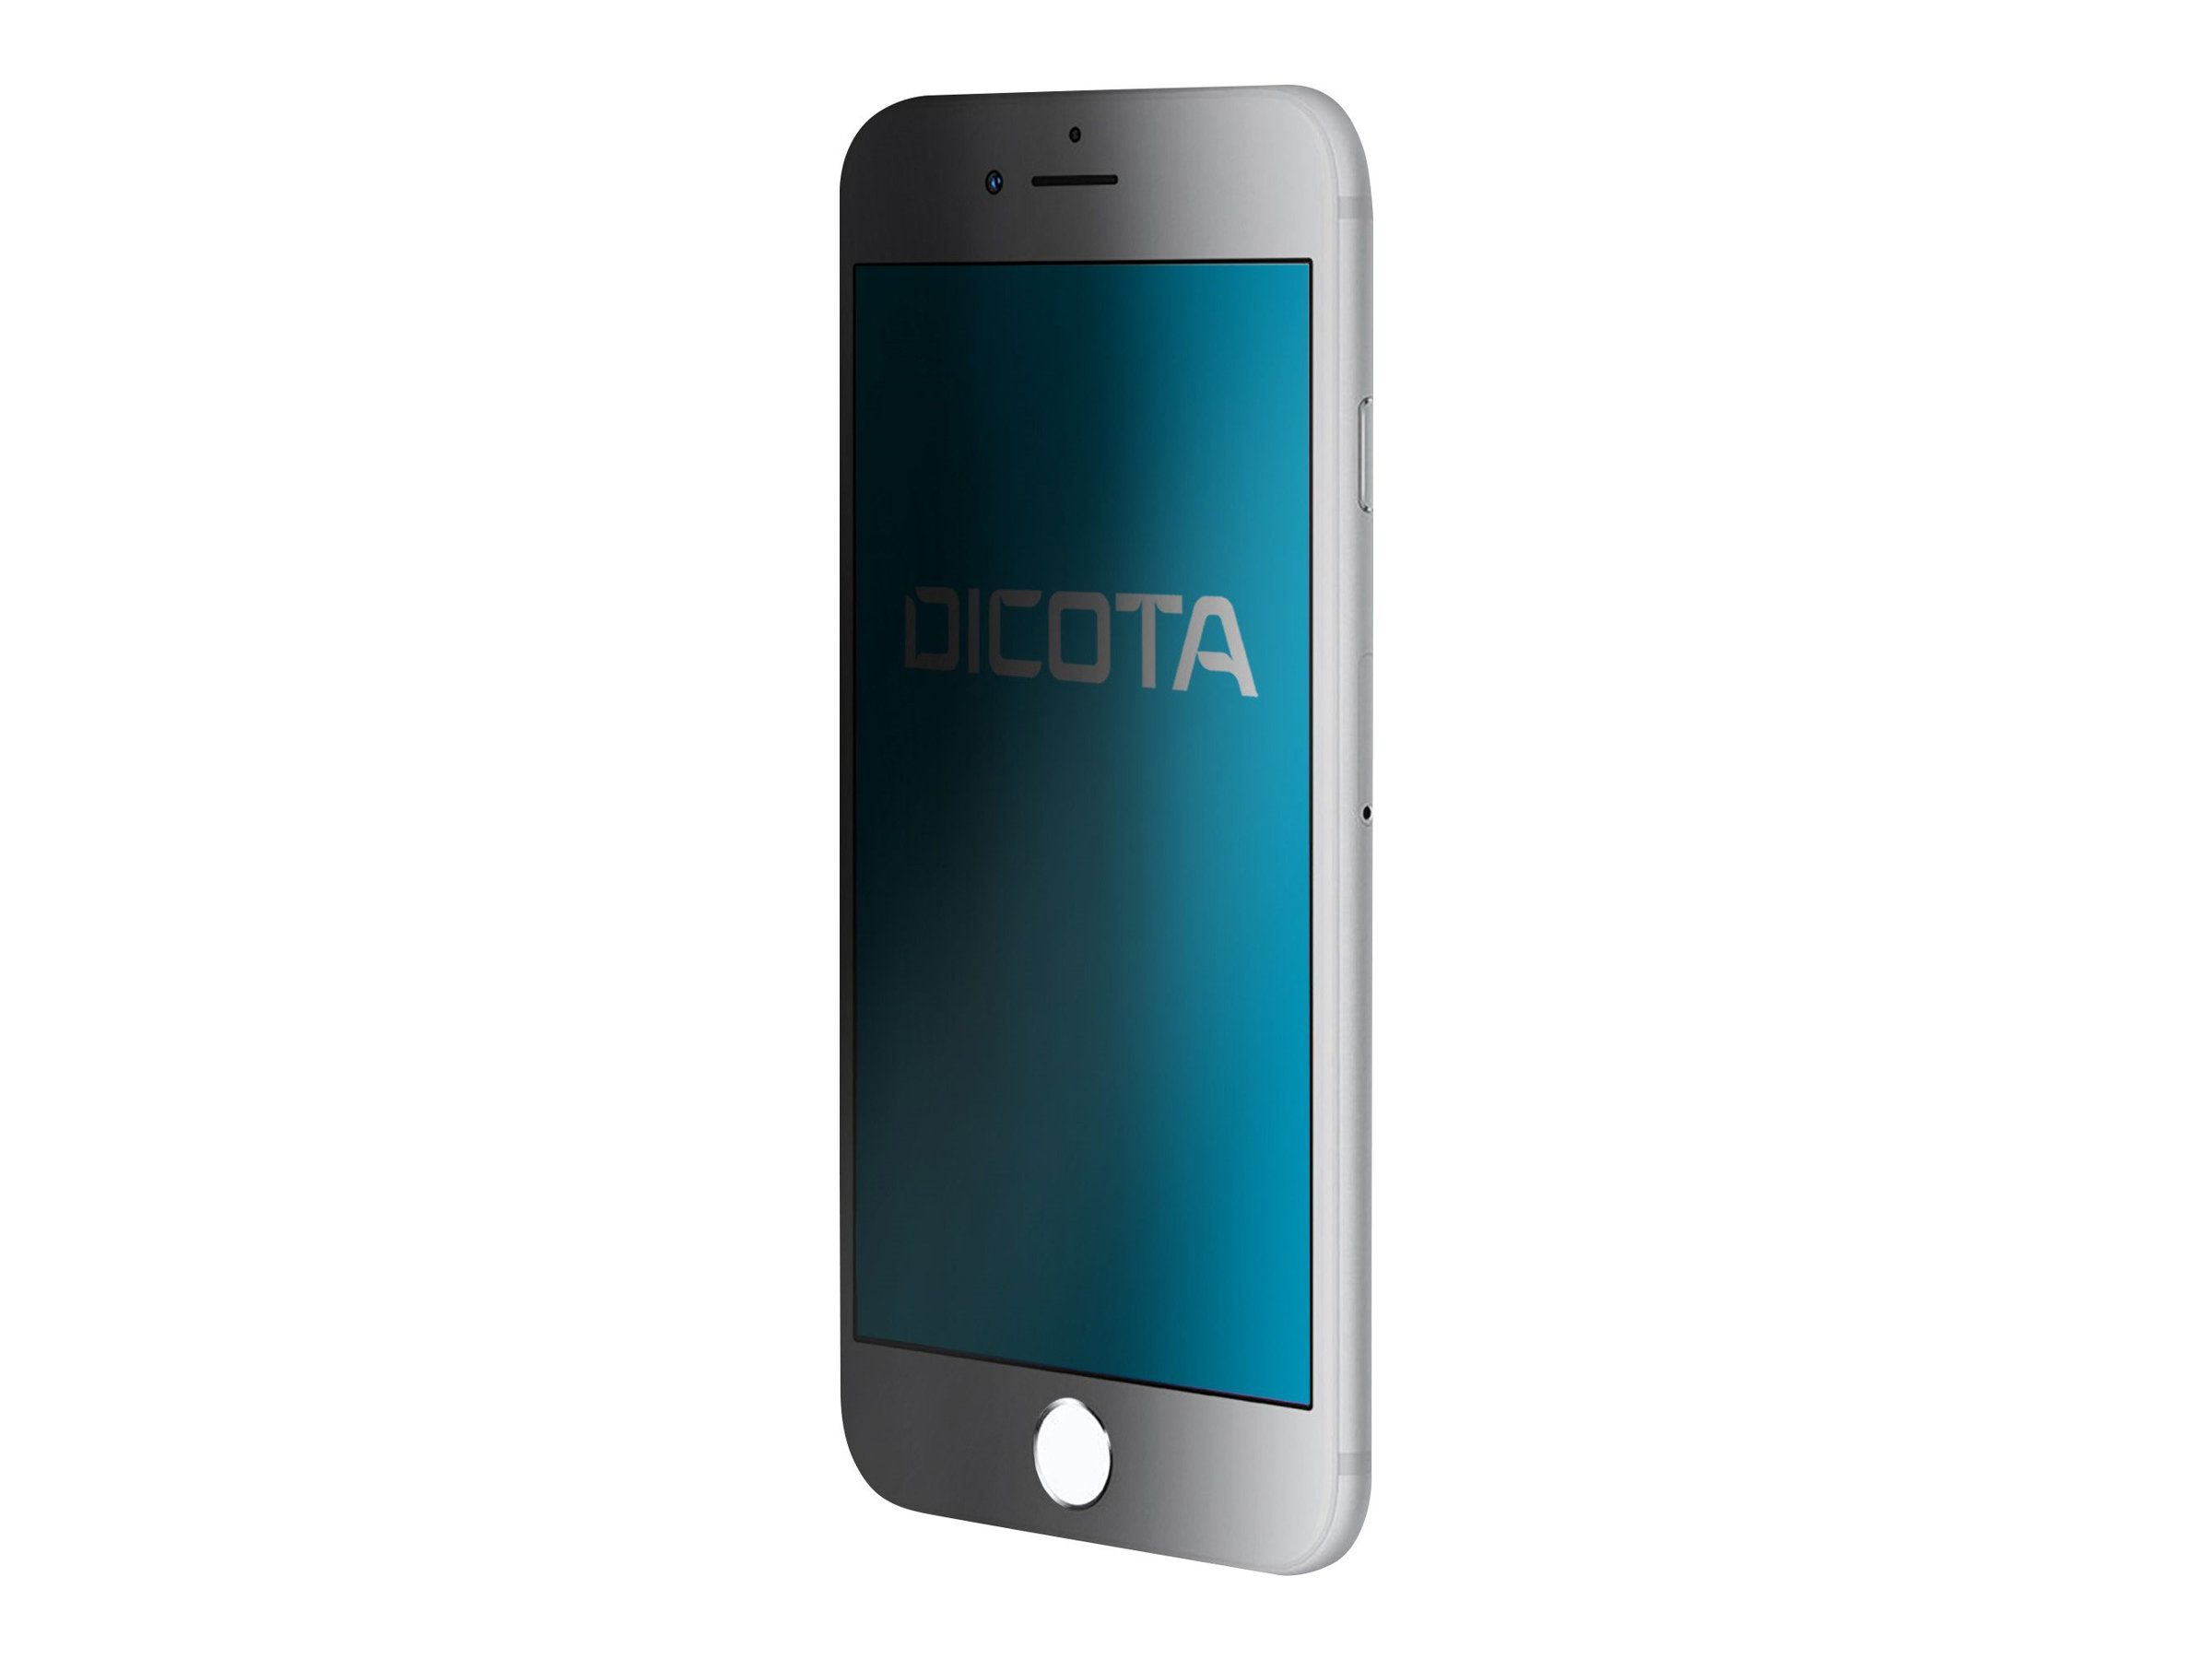 Dicota Secret - Bildschirmschutz für Handy - mit Sichtschutzfilter - 4-Wege - durchsichtig - für Apple iPhone 8, SE (2. Generation)